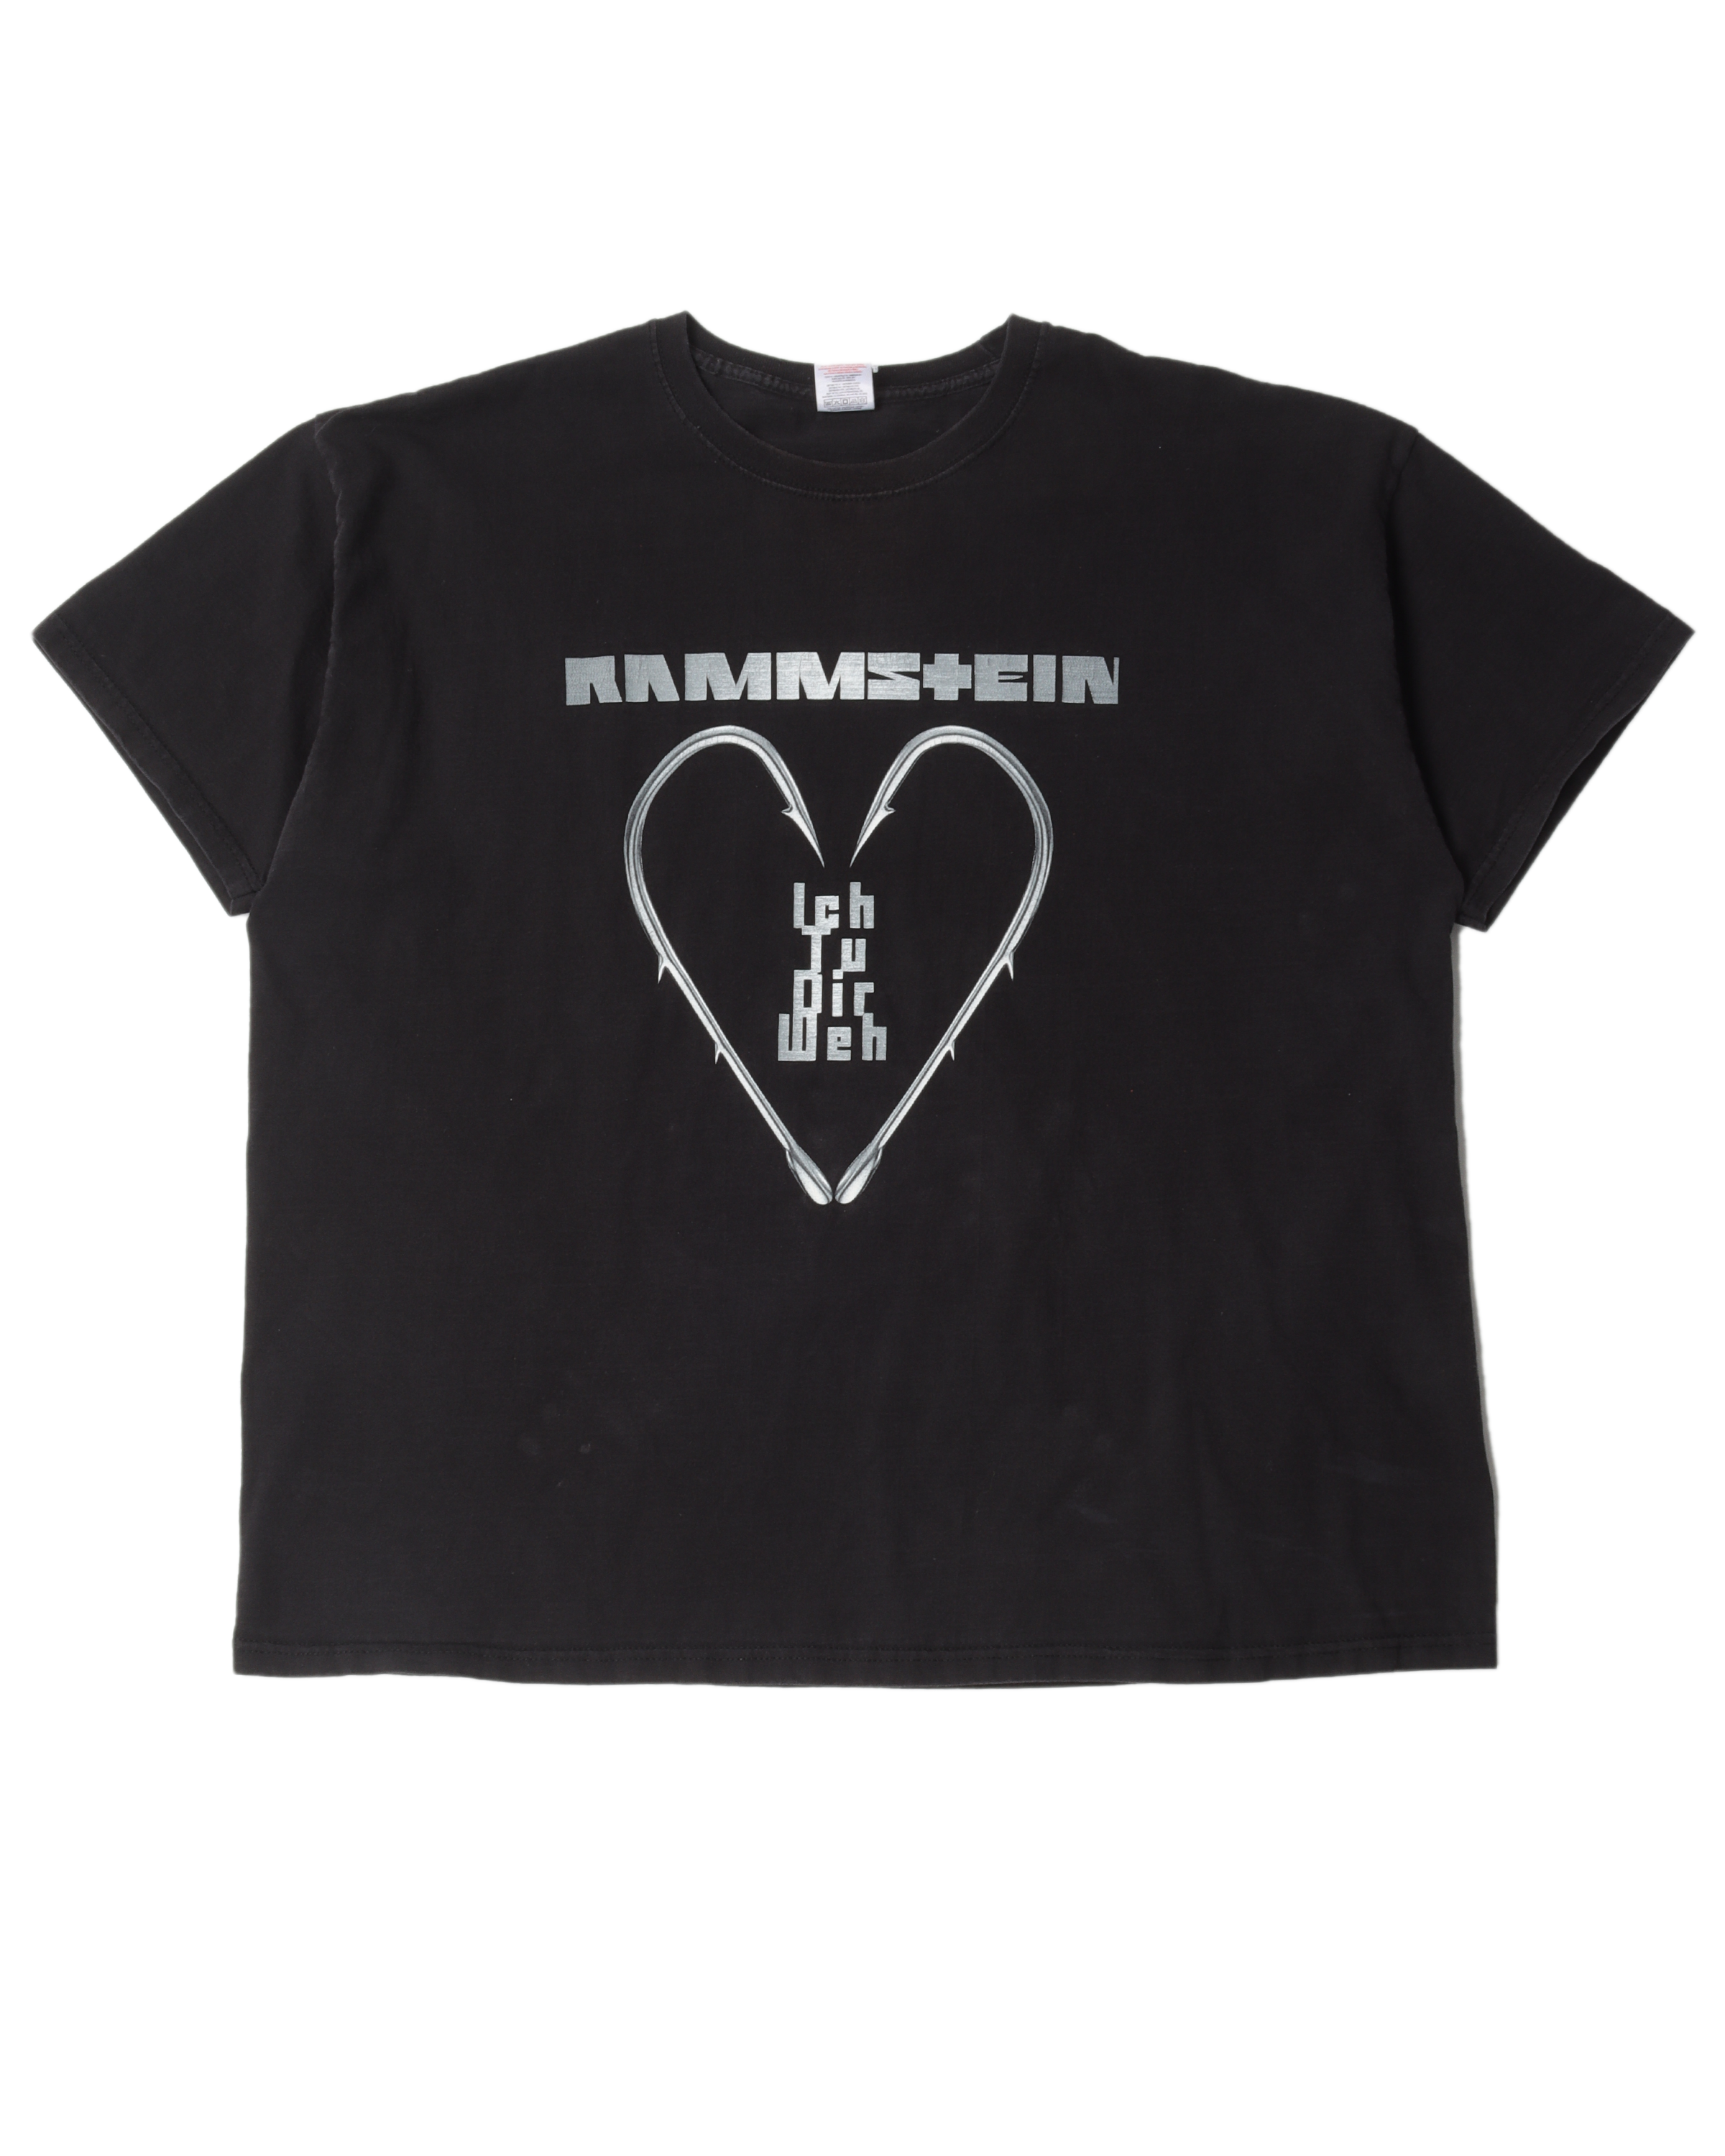 Rammstein T-Shirt